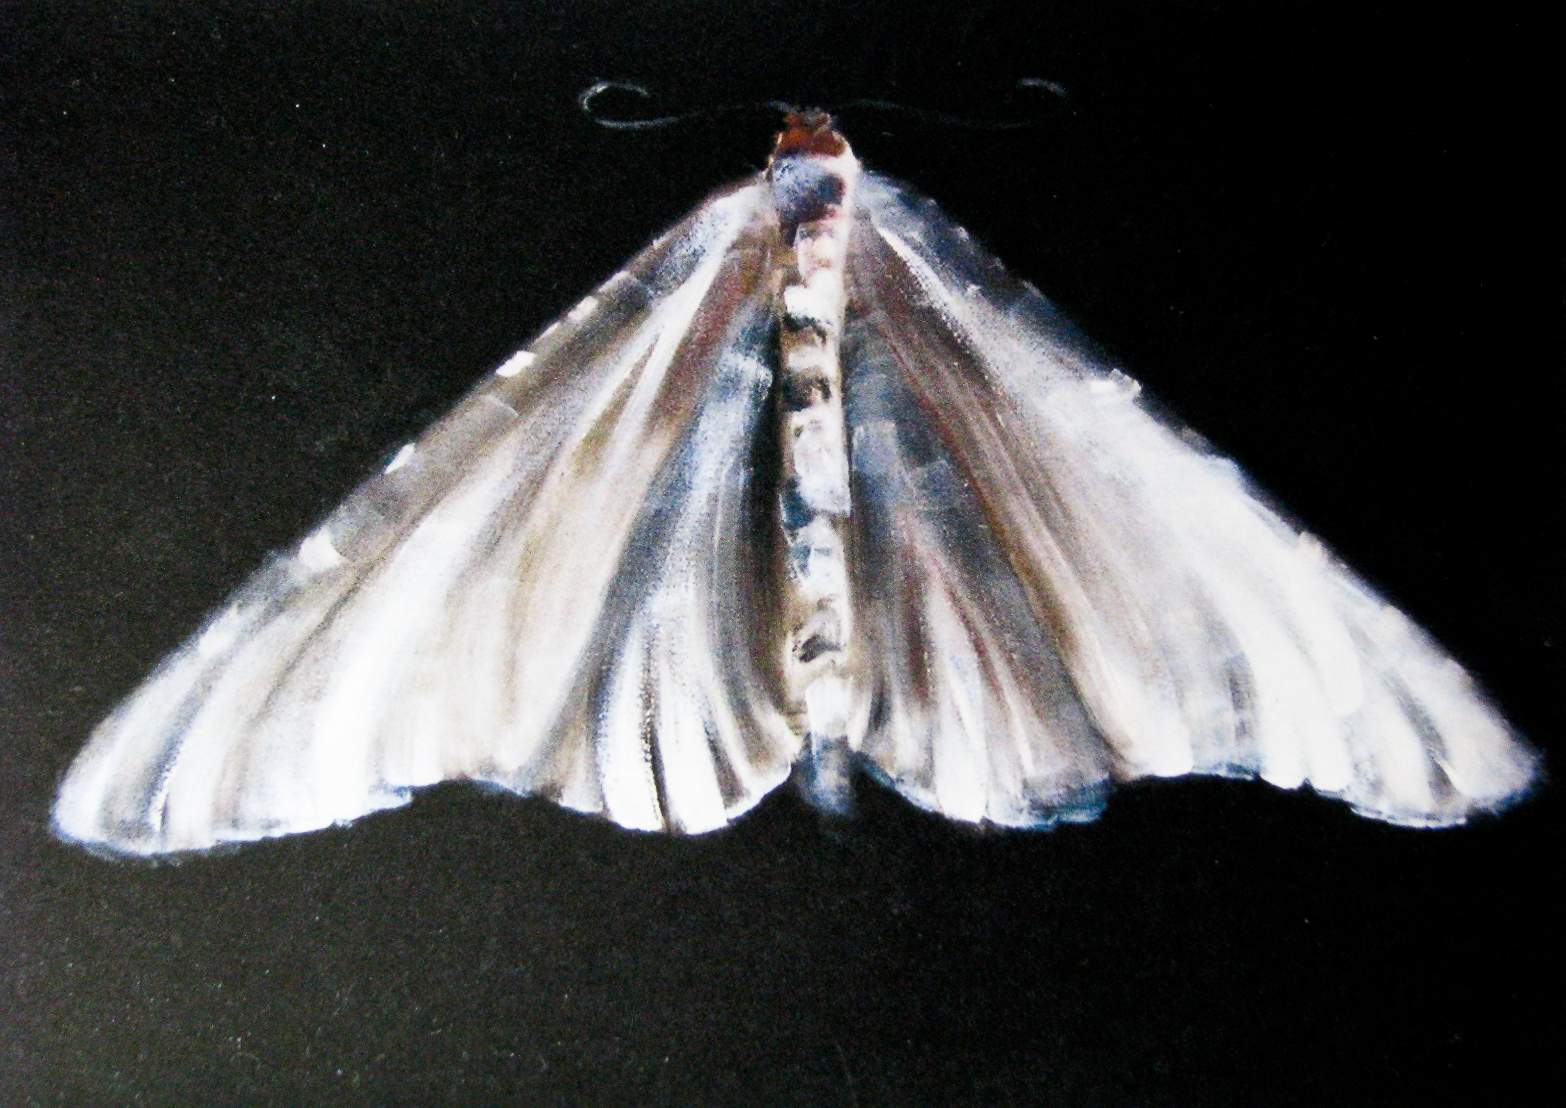 Moth OIl